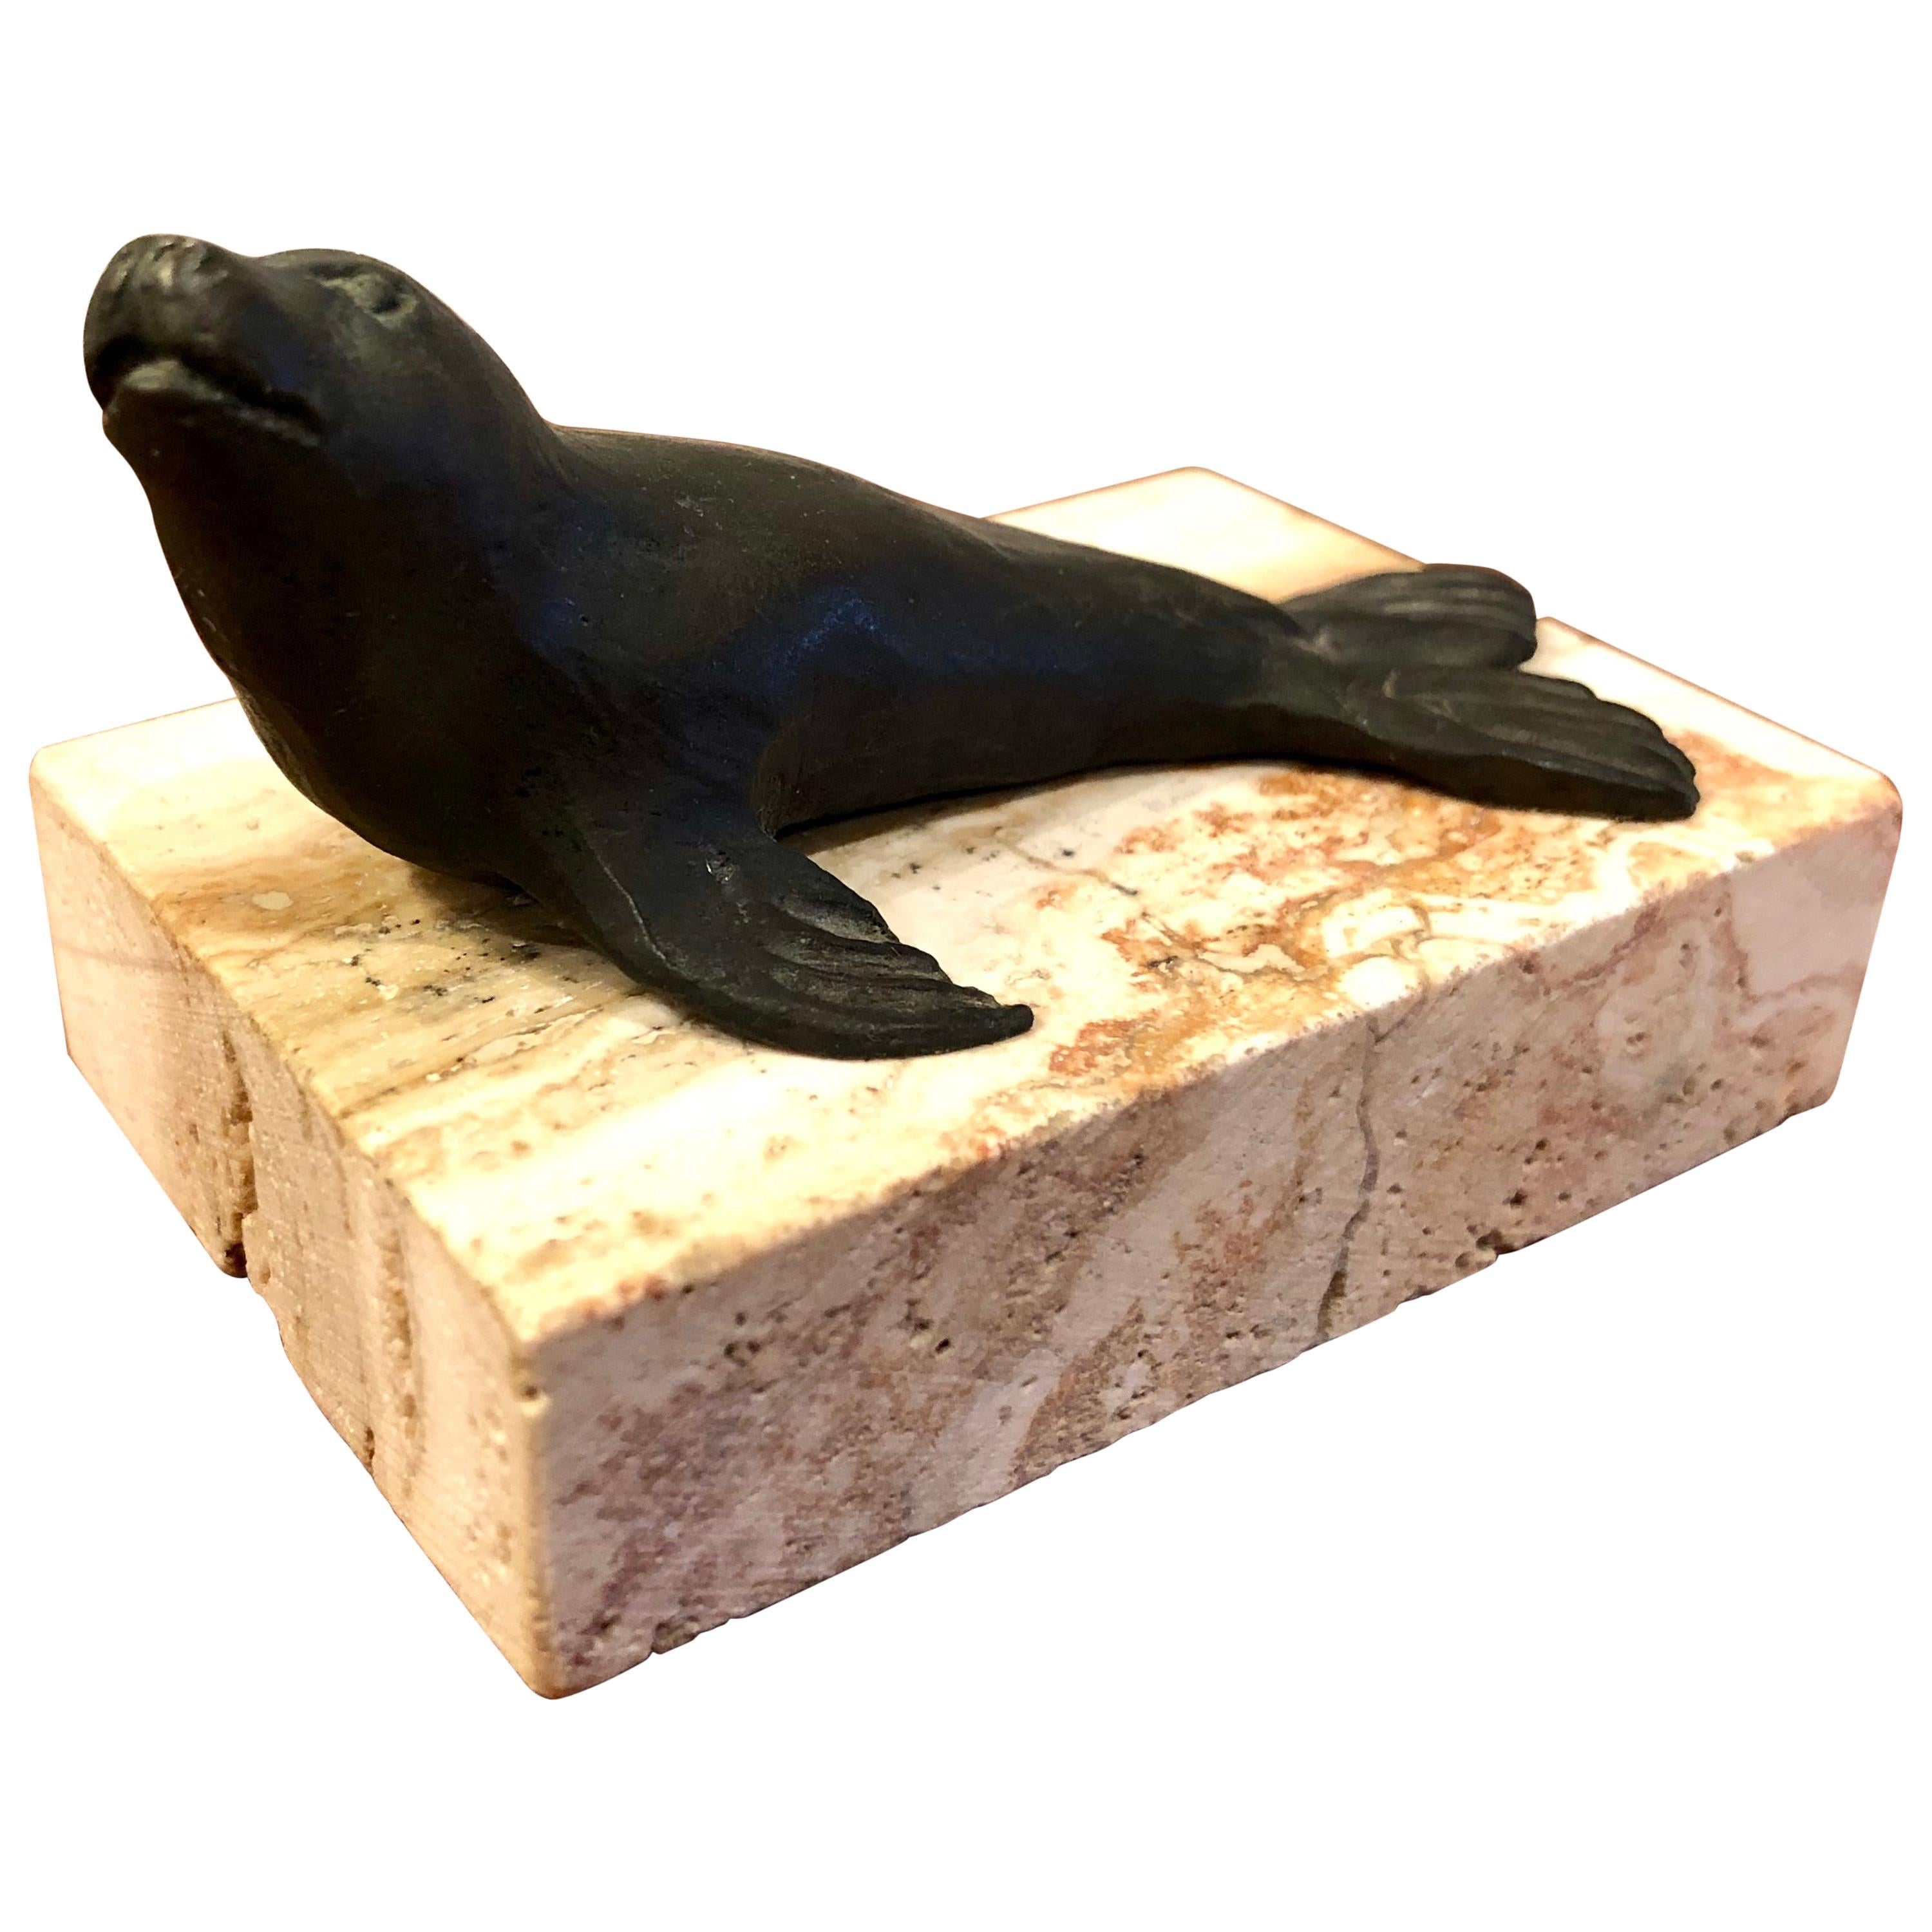 Signed Original Bronze Seal Sculpture by Artist Siggy Puchta